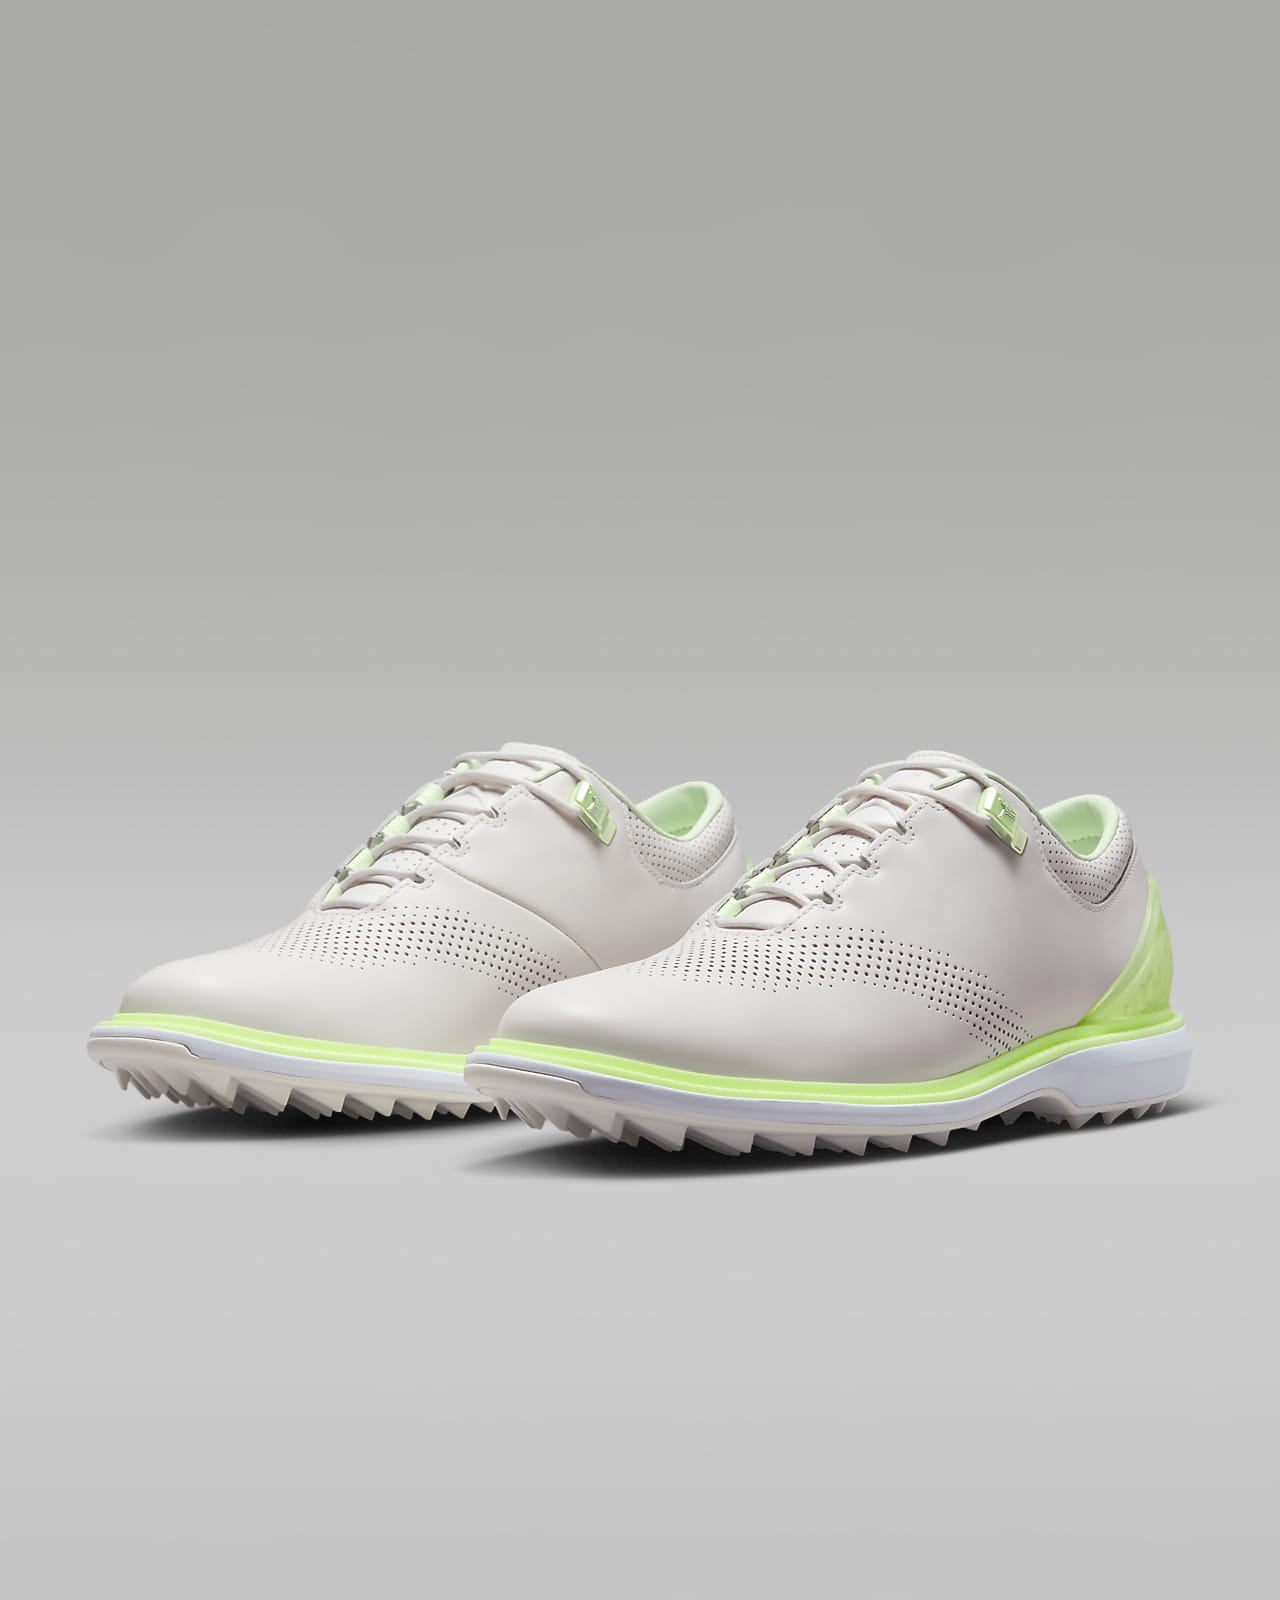 Jordan ADG 4 男款高爾夫球鞋。Nike TW